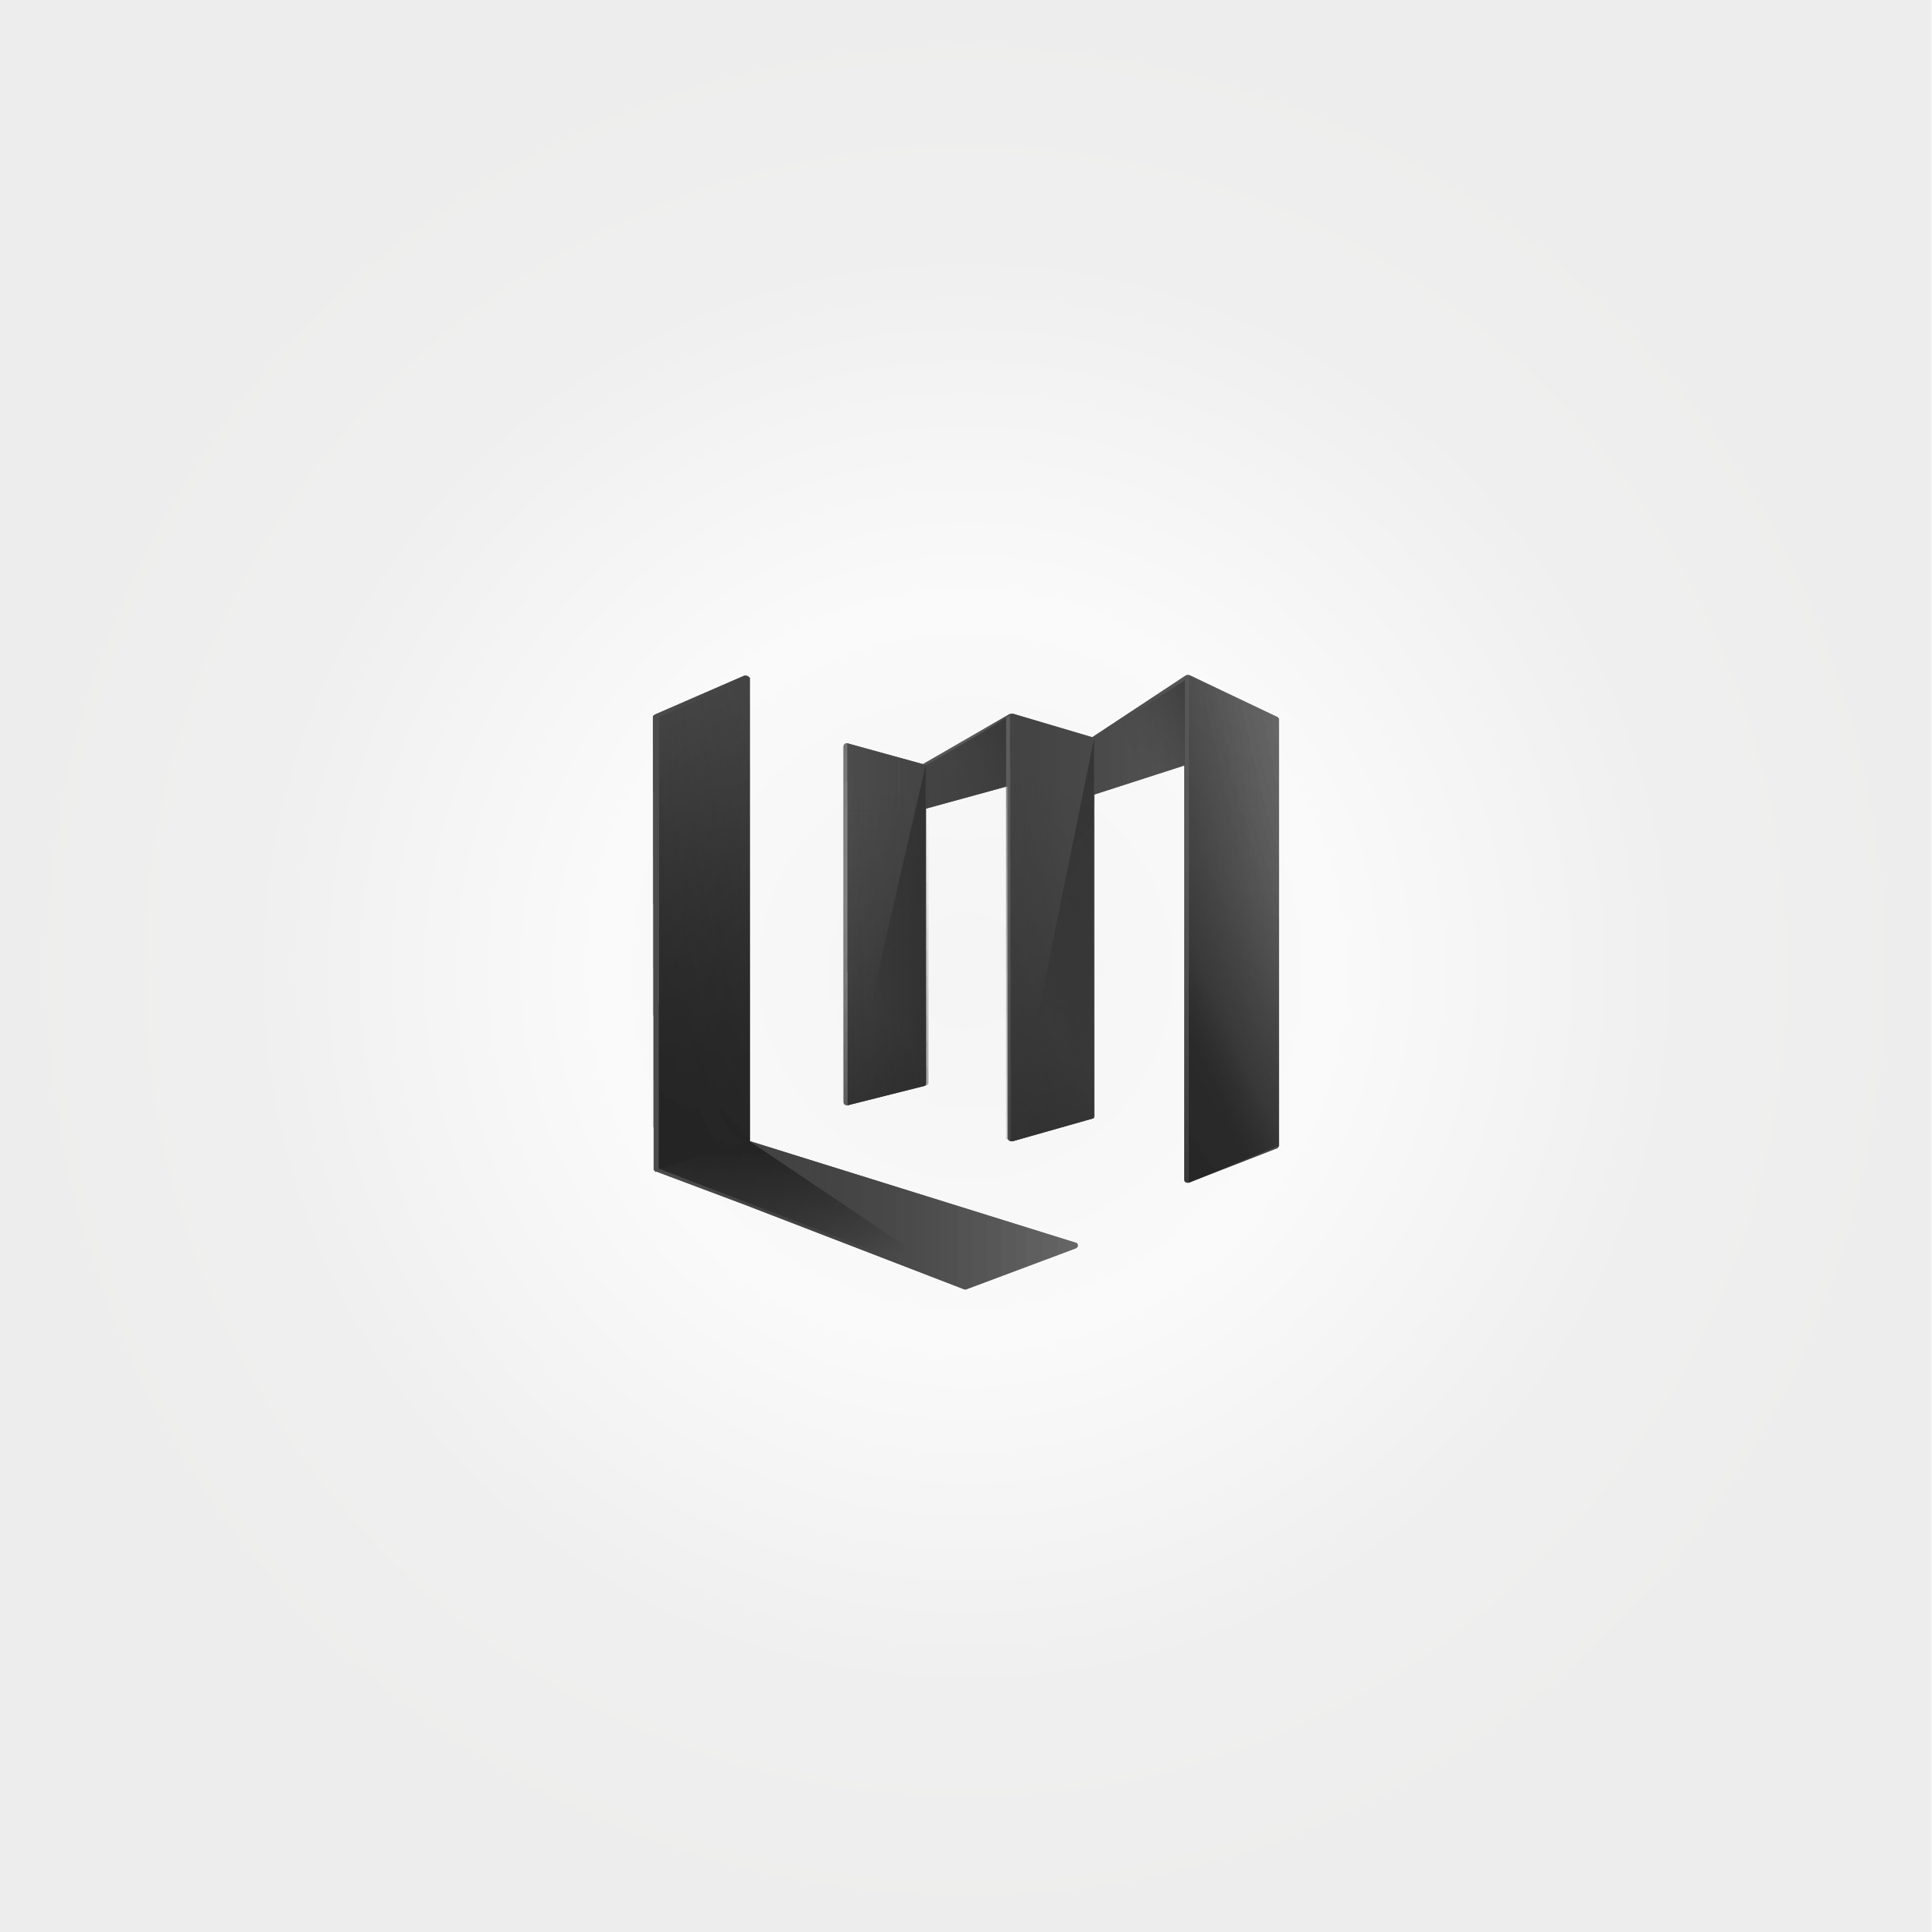 Lm Logo - per La Monaca serramenti. #lm #logo #design #brand #branding ...